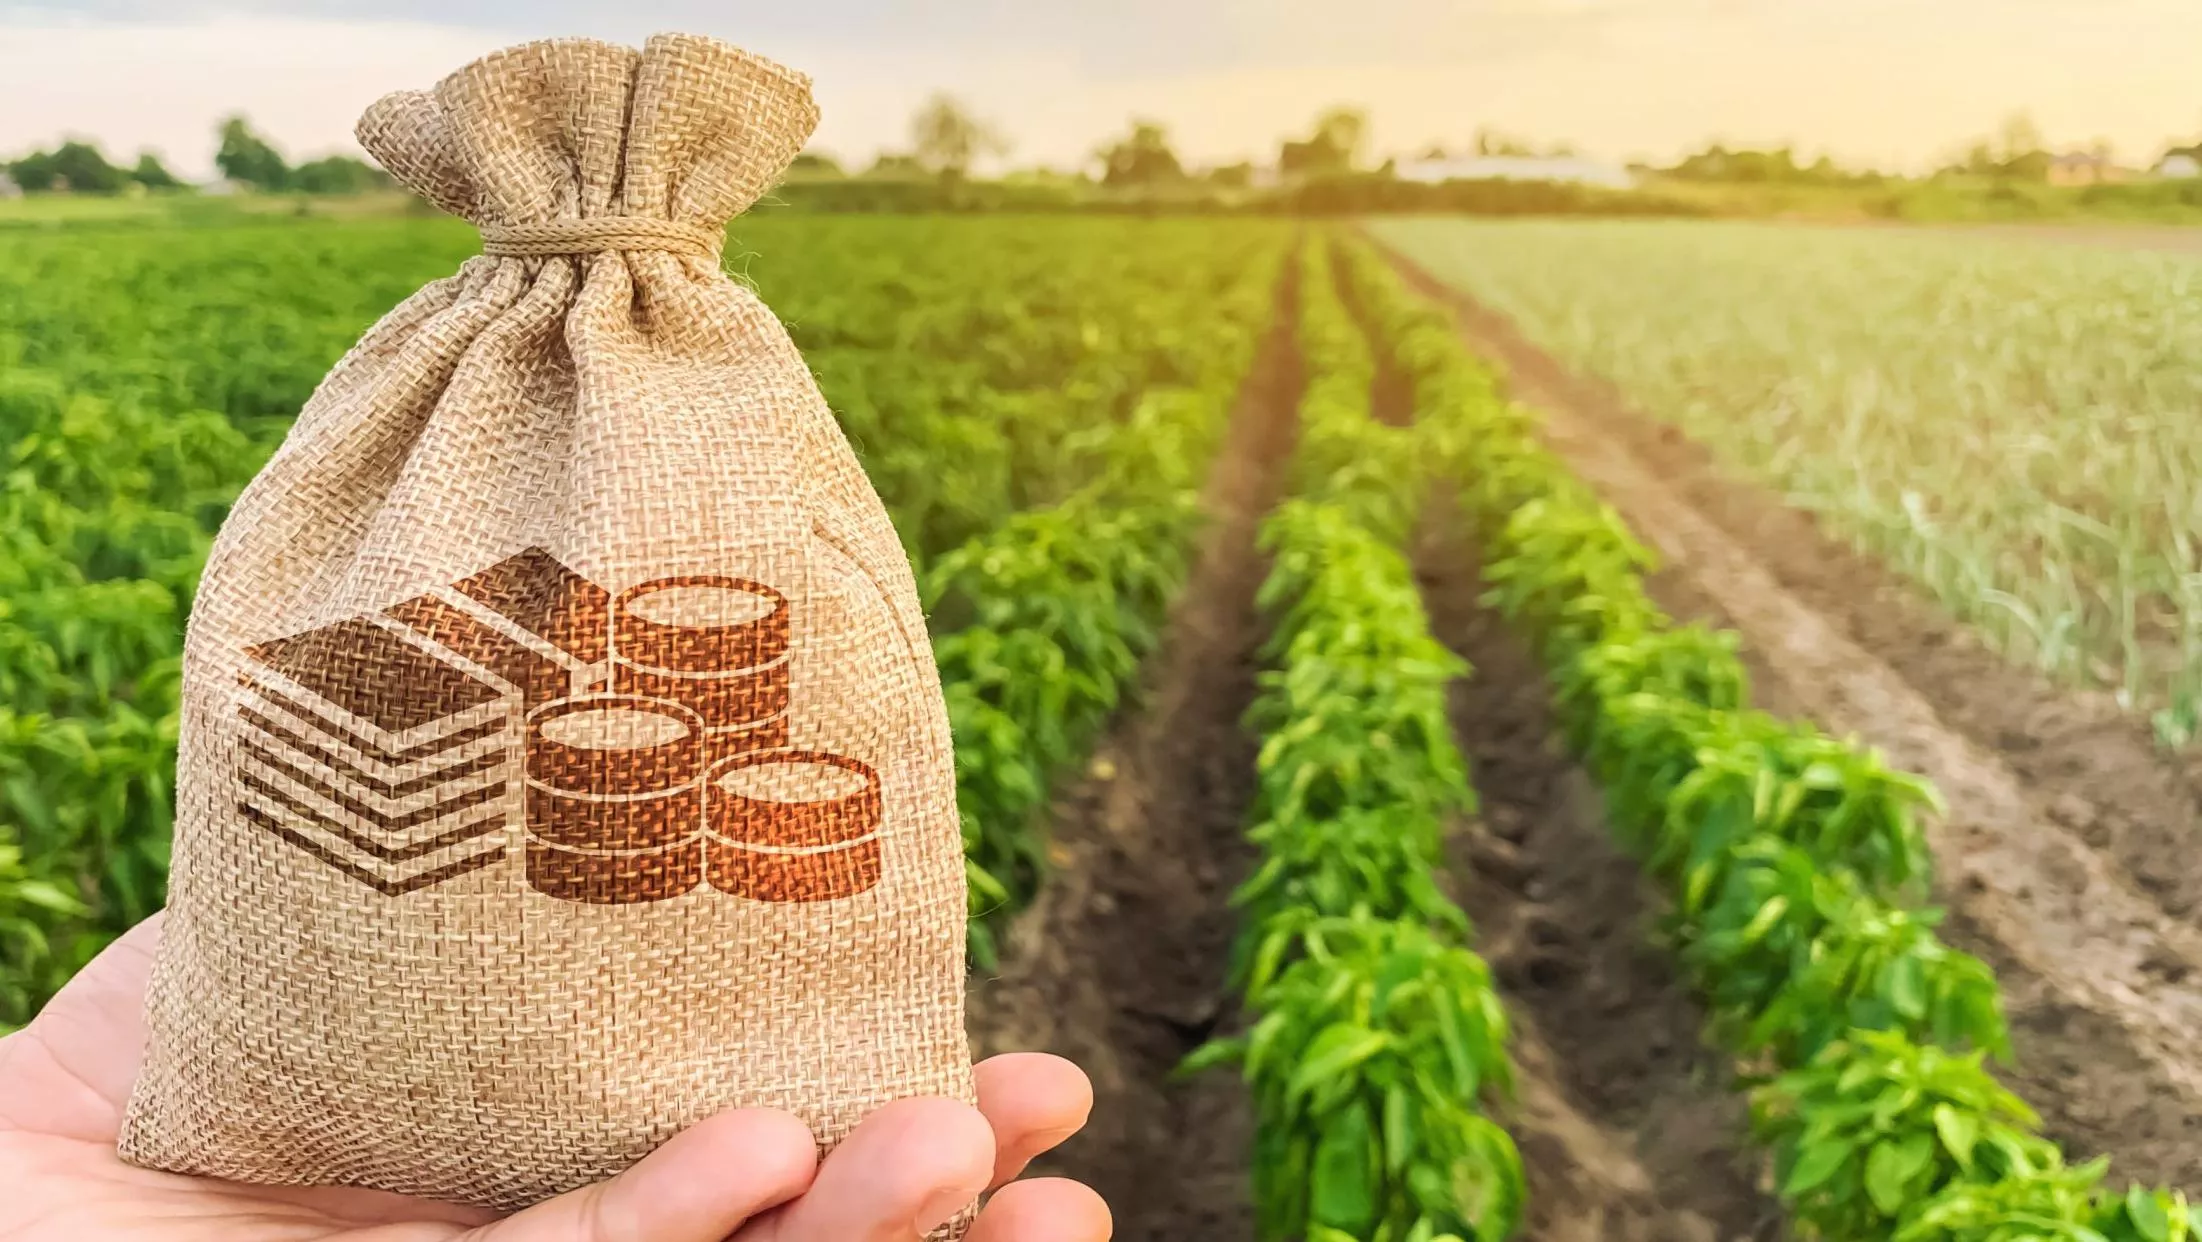 Сельхозпроизводители получат новые льготные кредиты